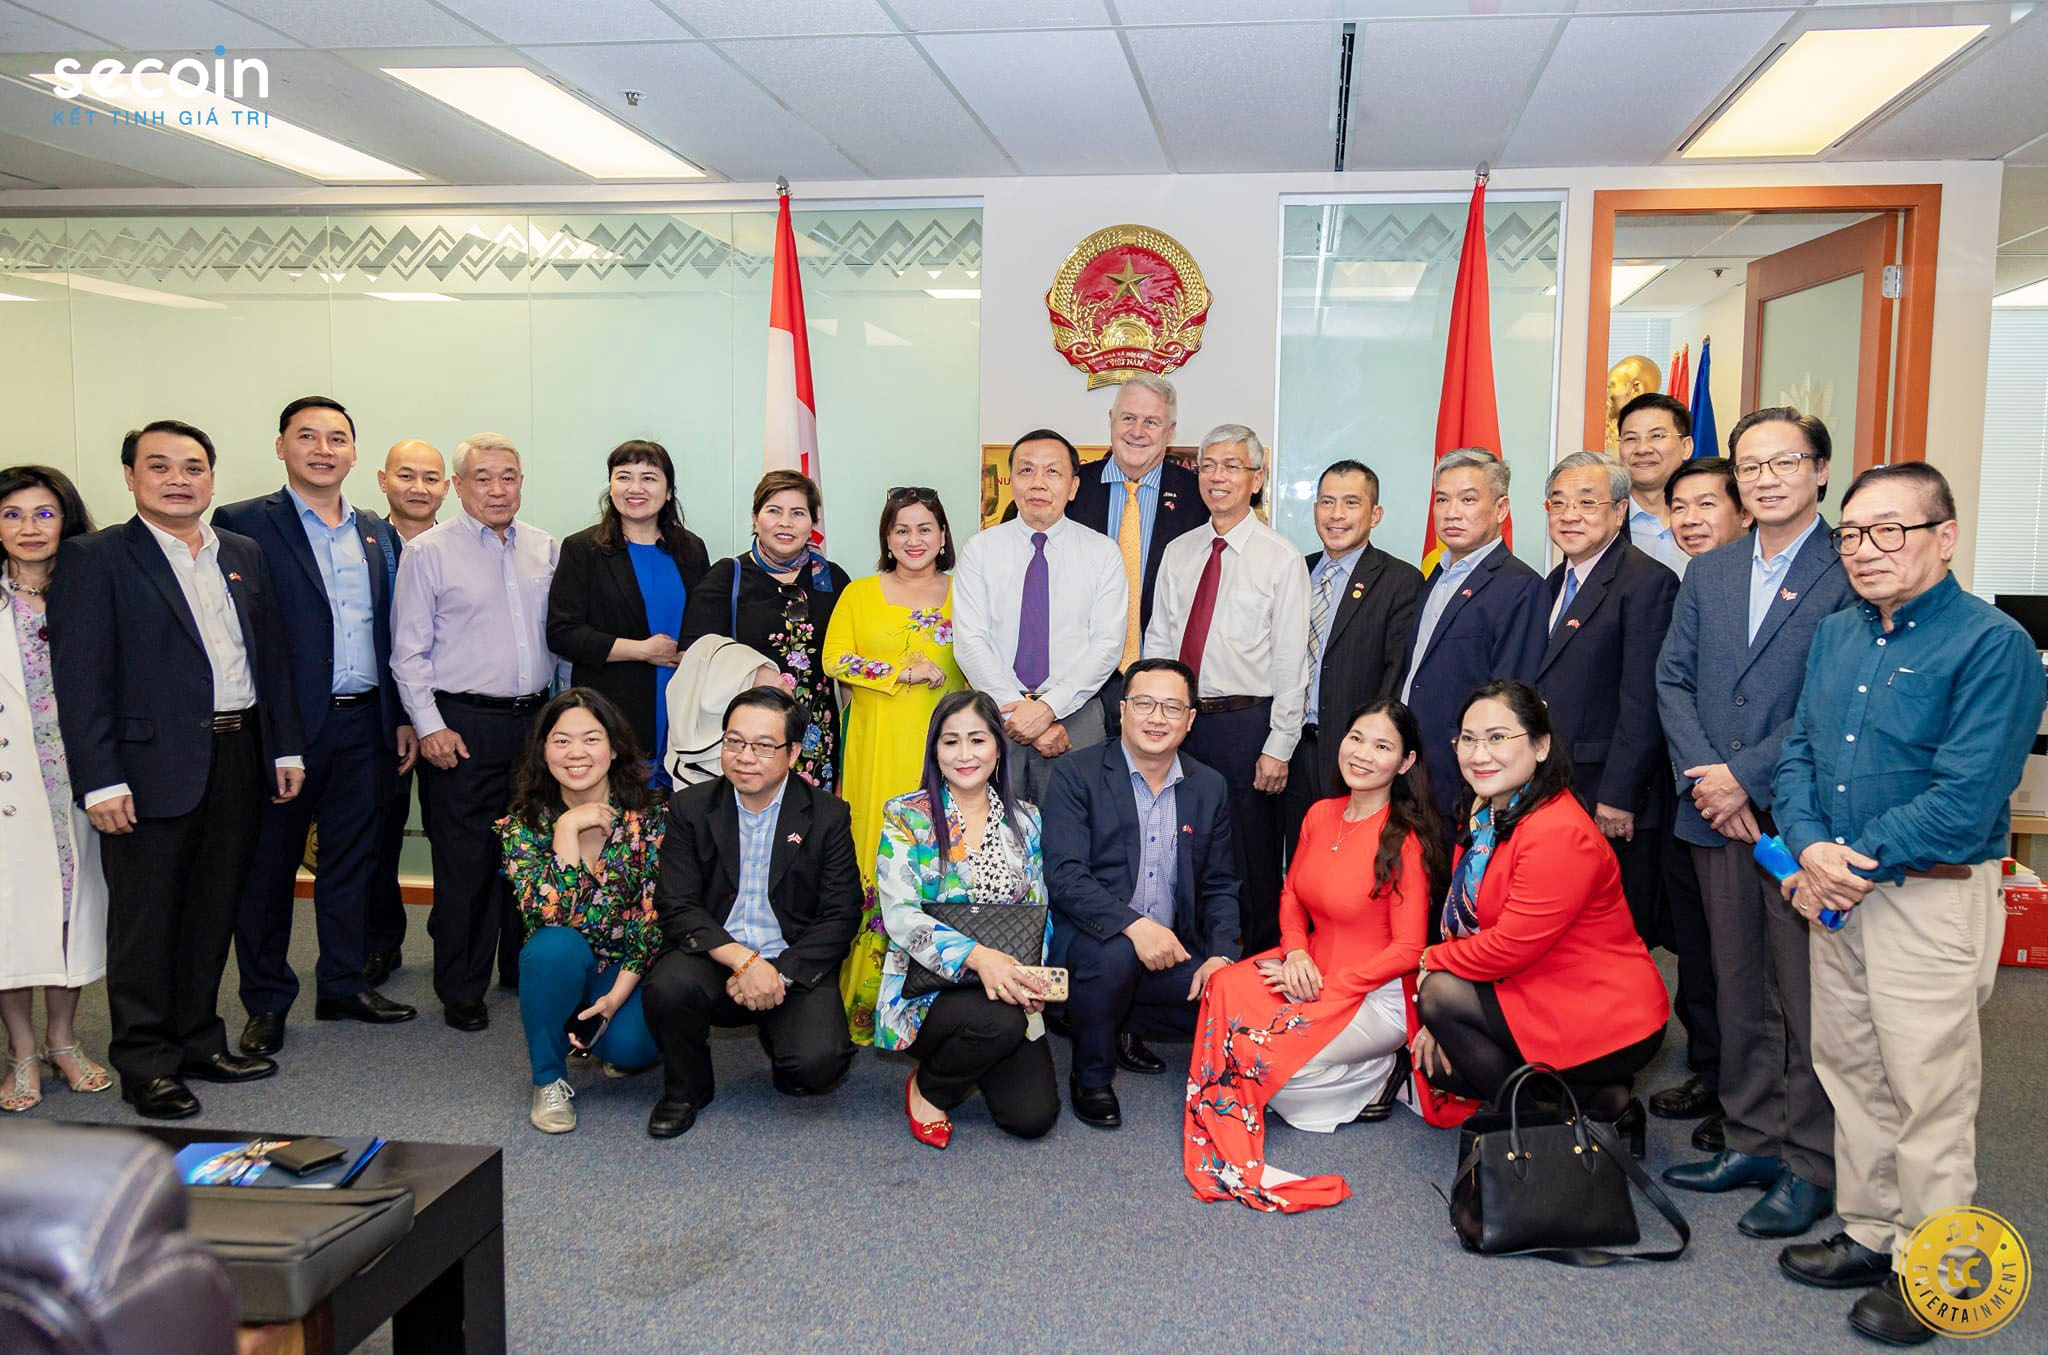 Secoin tham gia đoàn đại biểu TP Hồ Chí Minh thăm và làm việc tại Canada